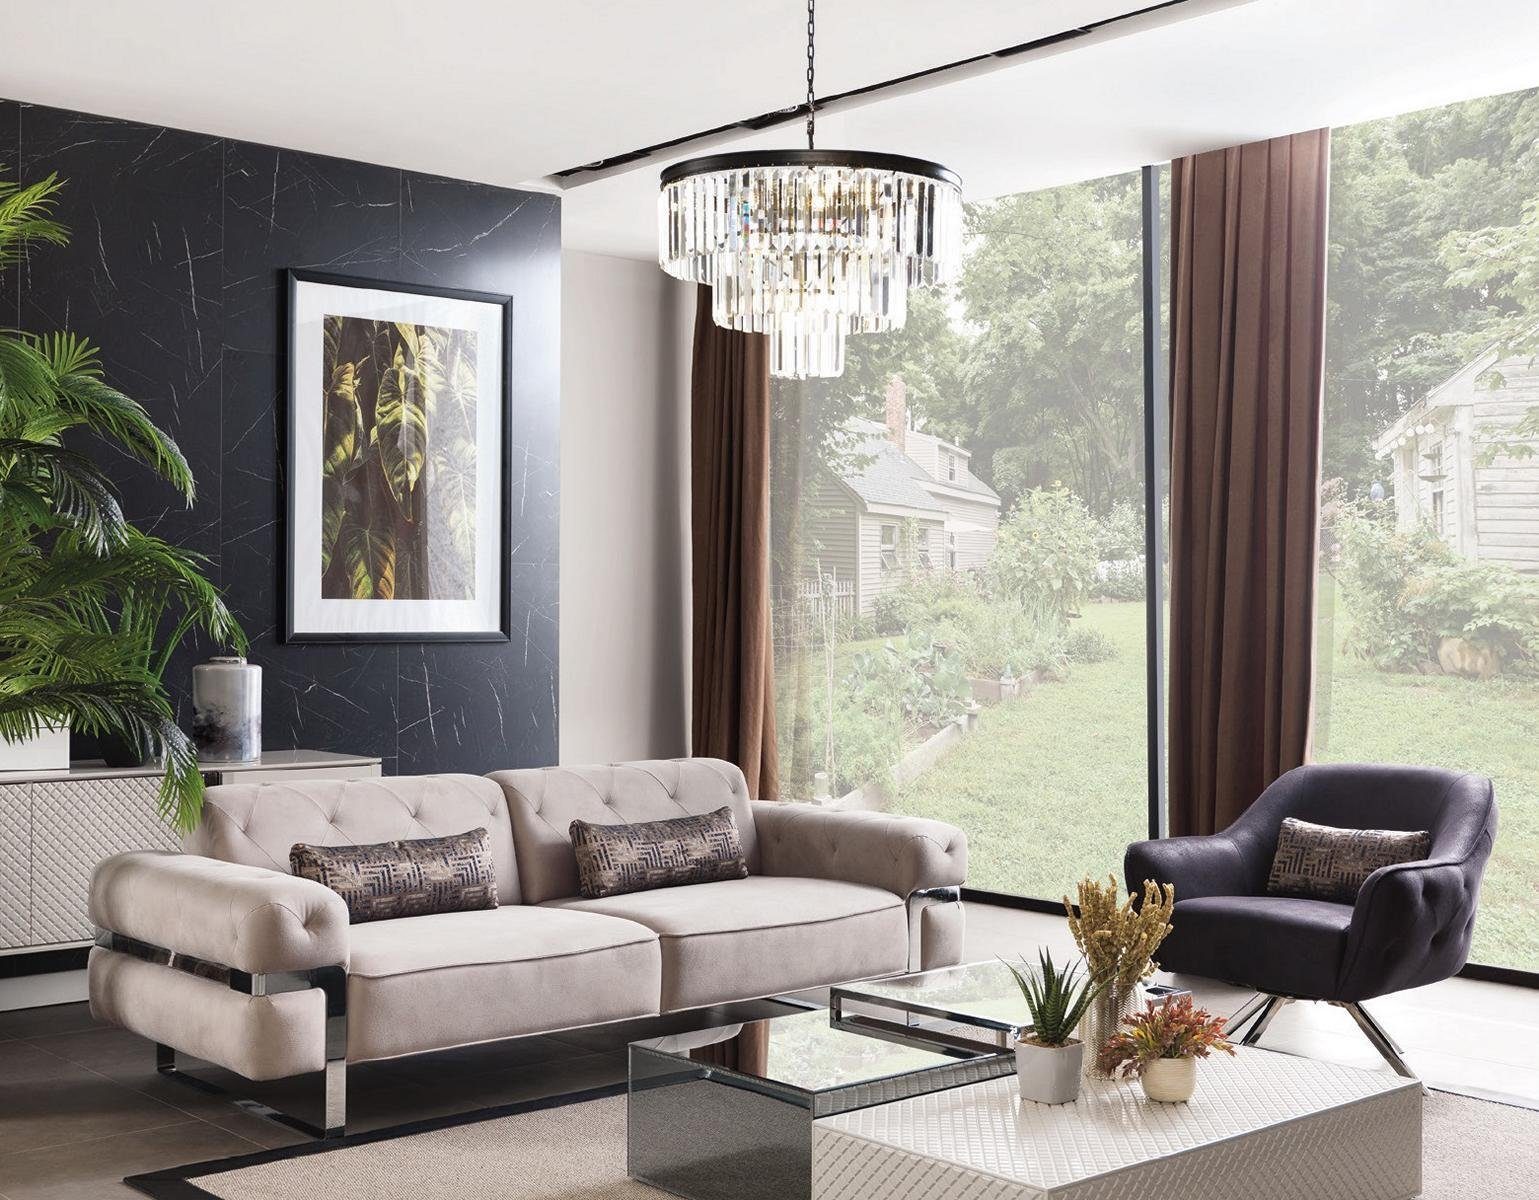 JVmoebel 3-Sitzer Wohnzimmer Dreisitzer Design Sofa 3 Sitzer Polster Couch Sofas beige